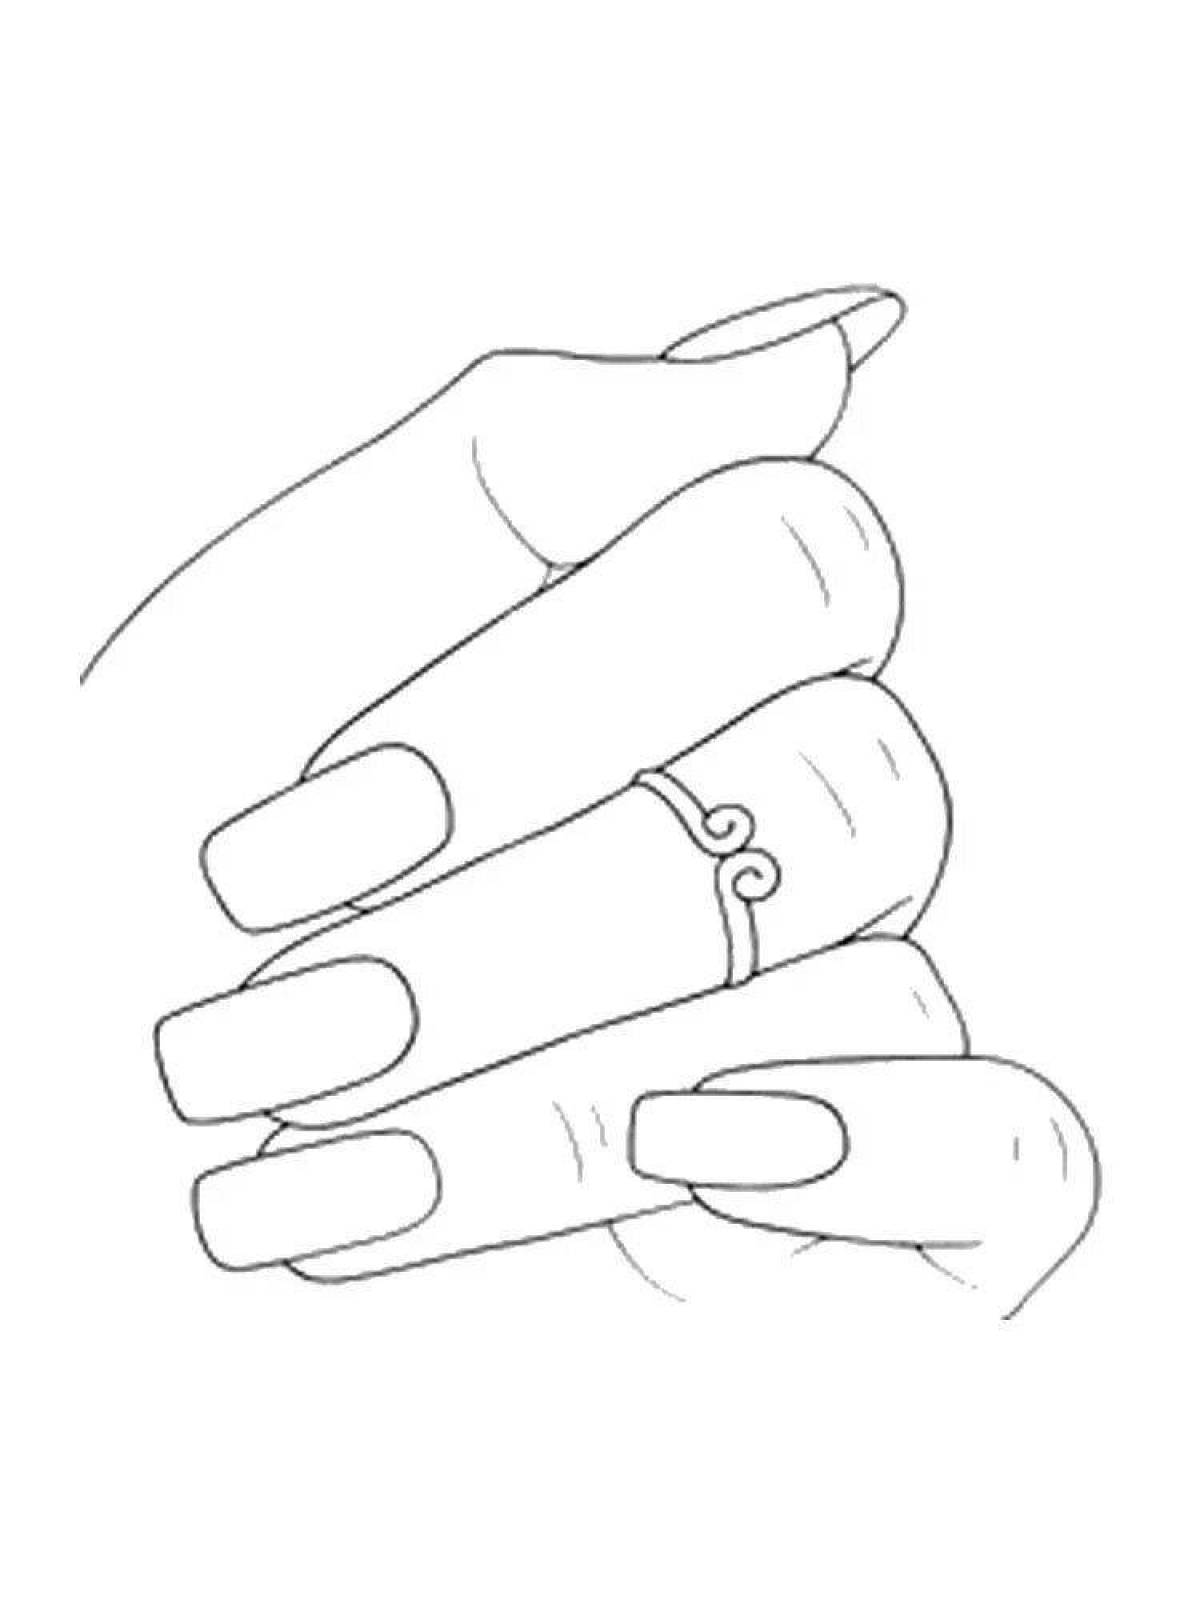 Идеальная рука с ногтями для маникюра